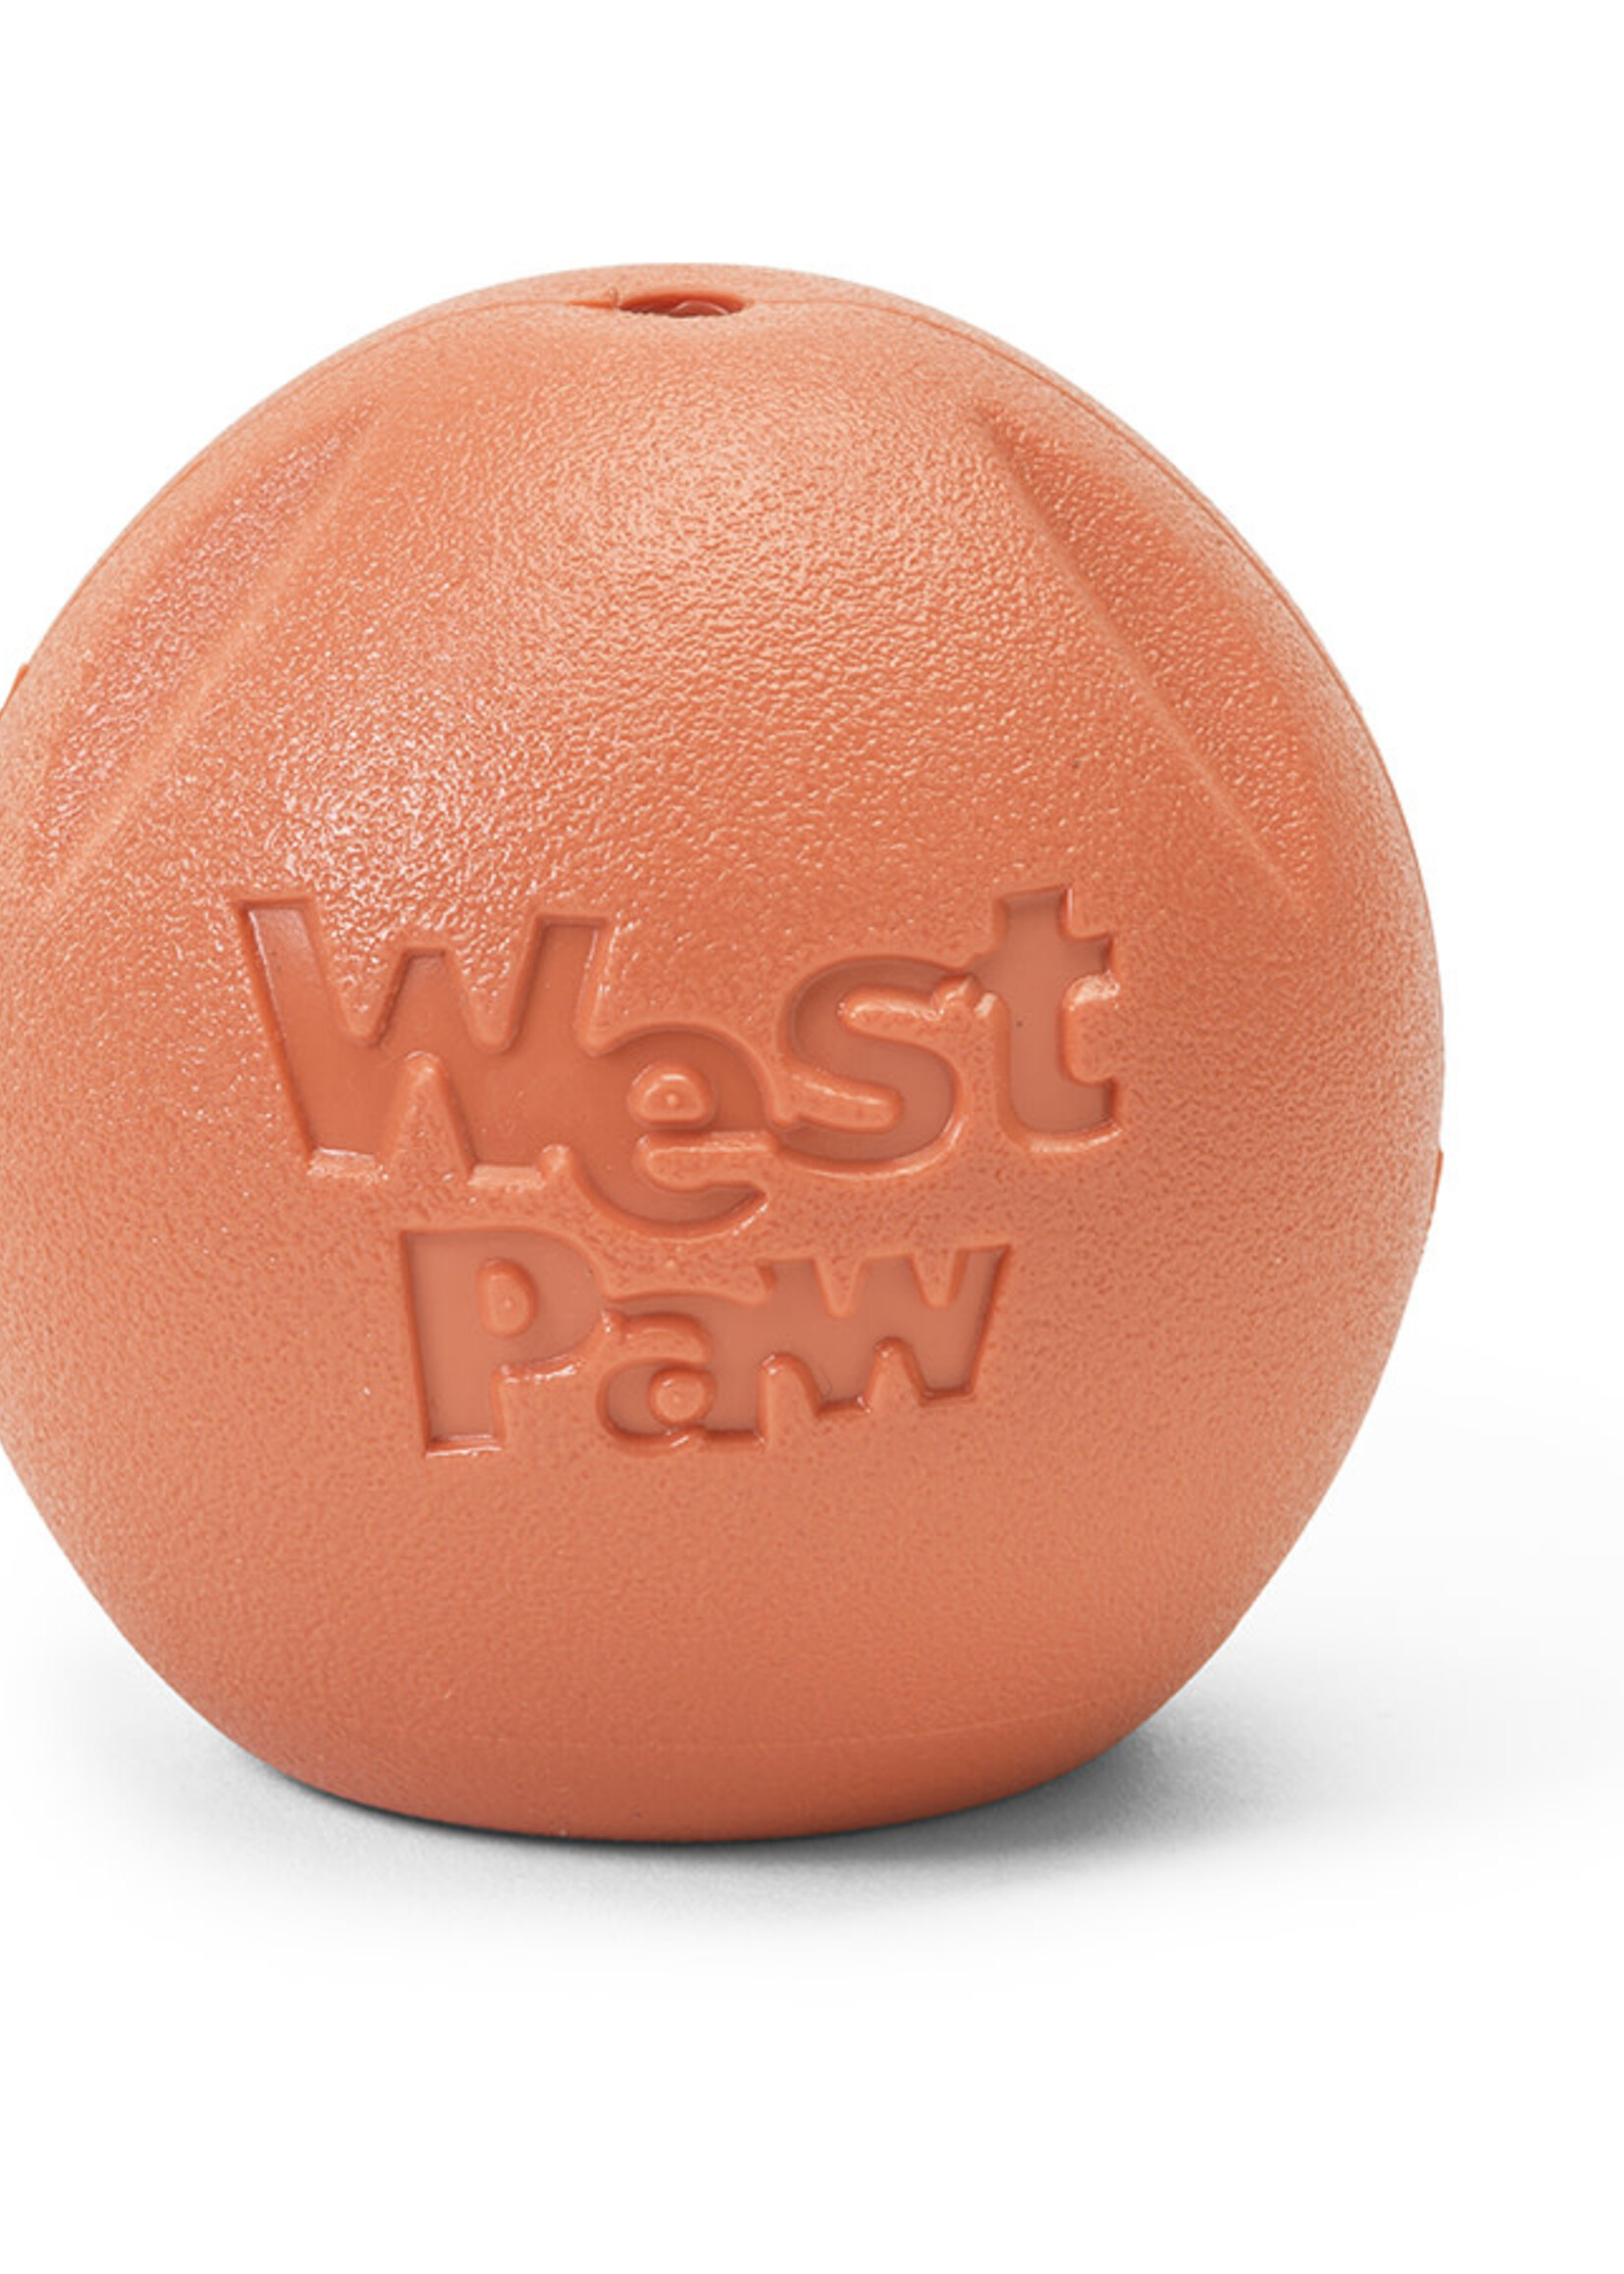 West Paw West Paw Rando Dog Toy